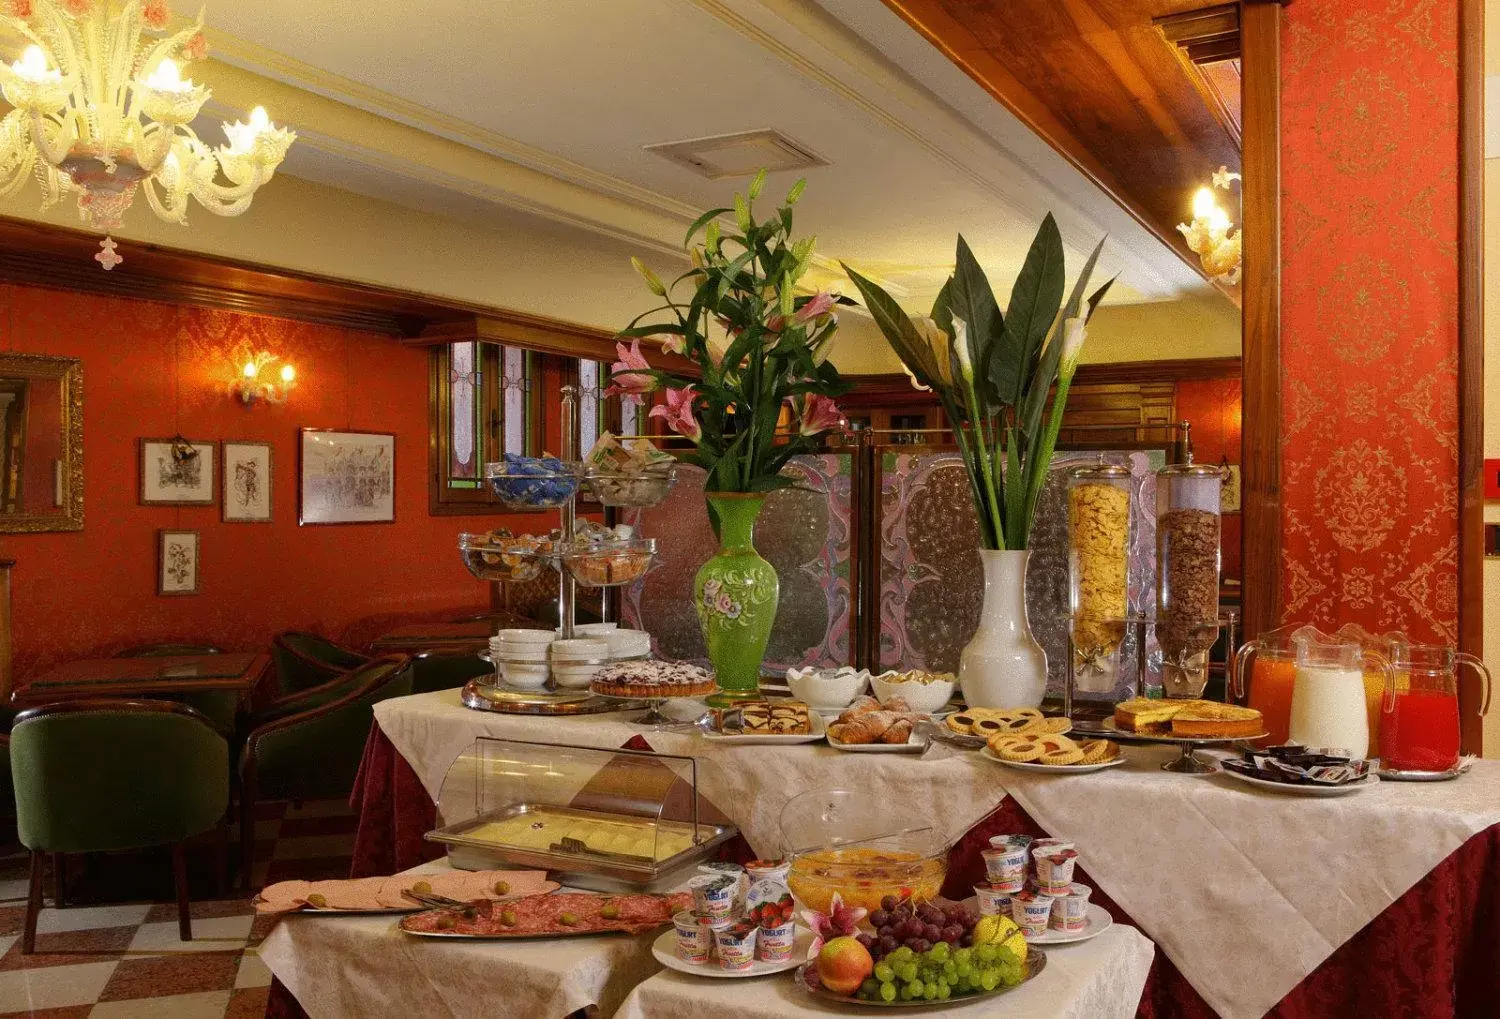 Buffet breakfast in Hotel Castello